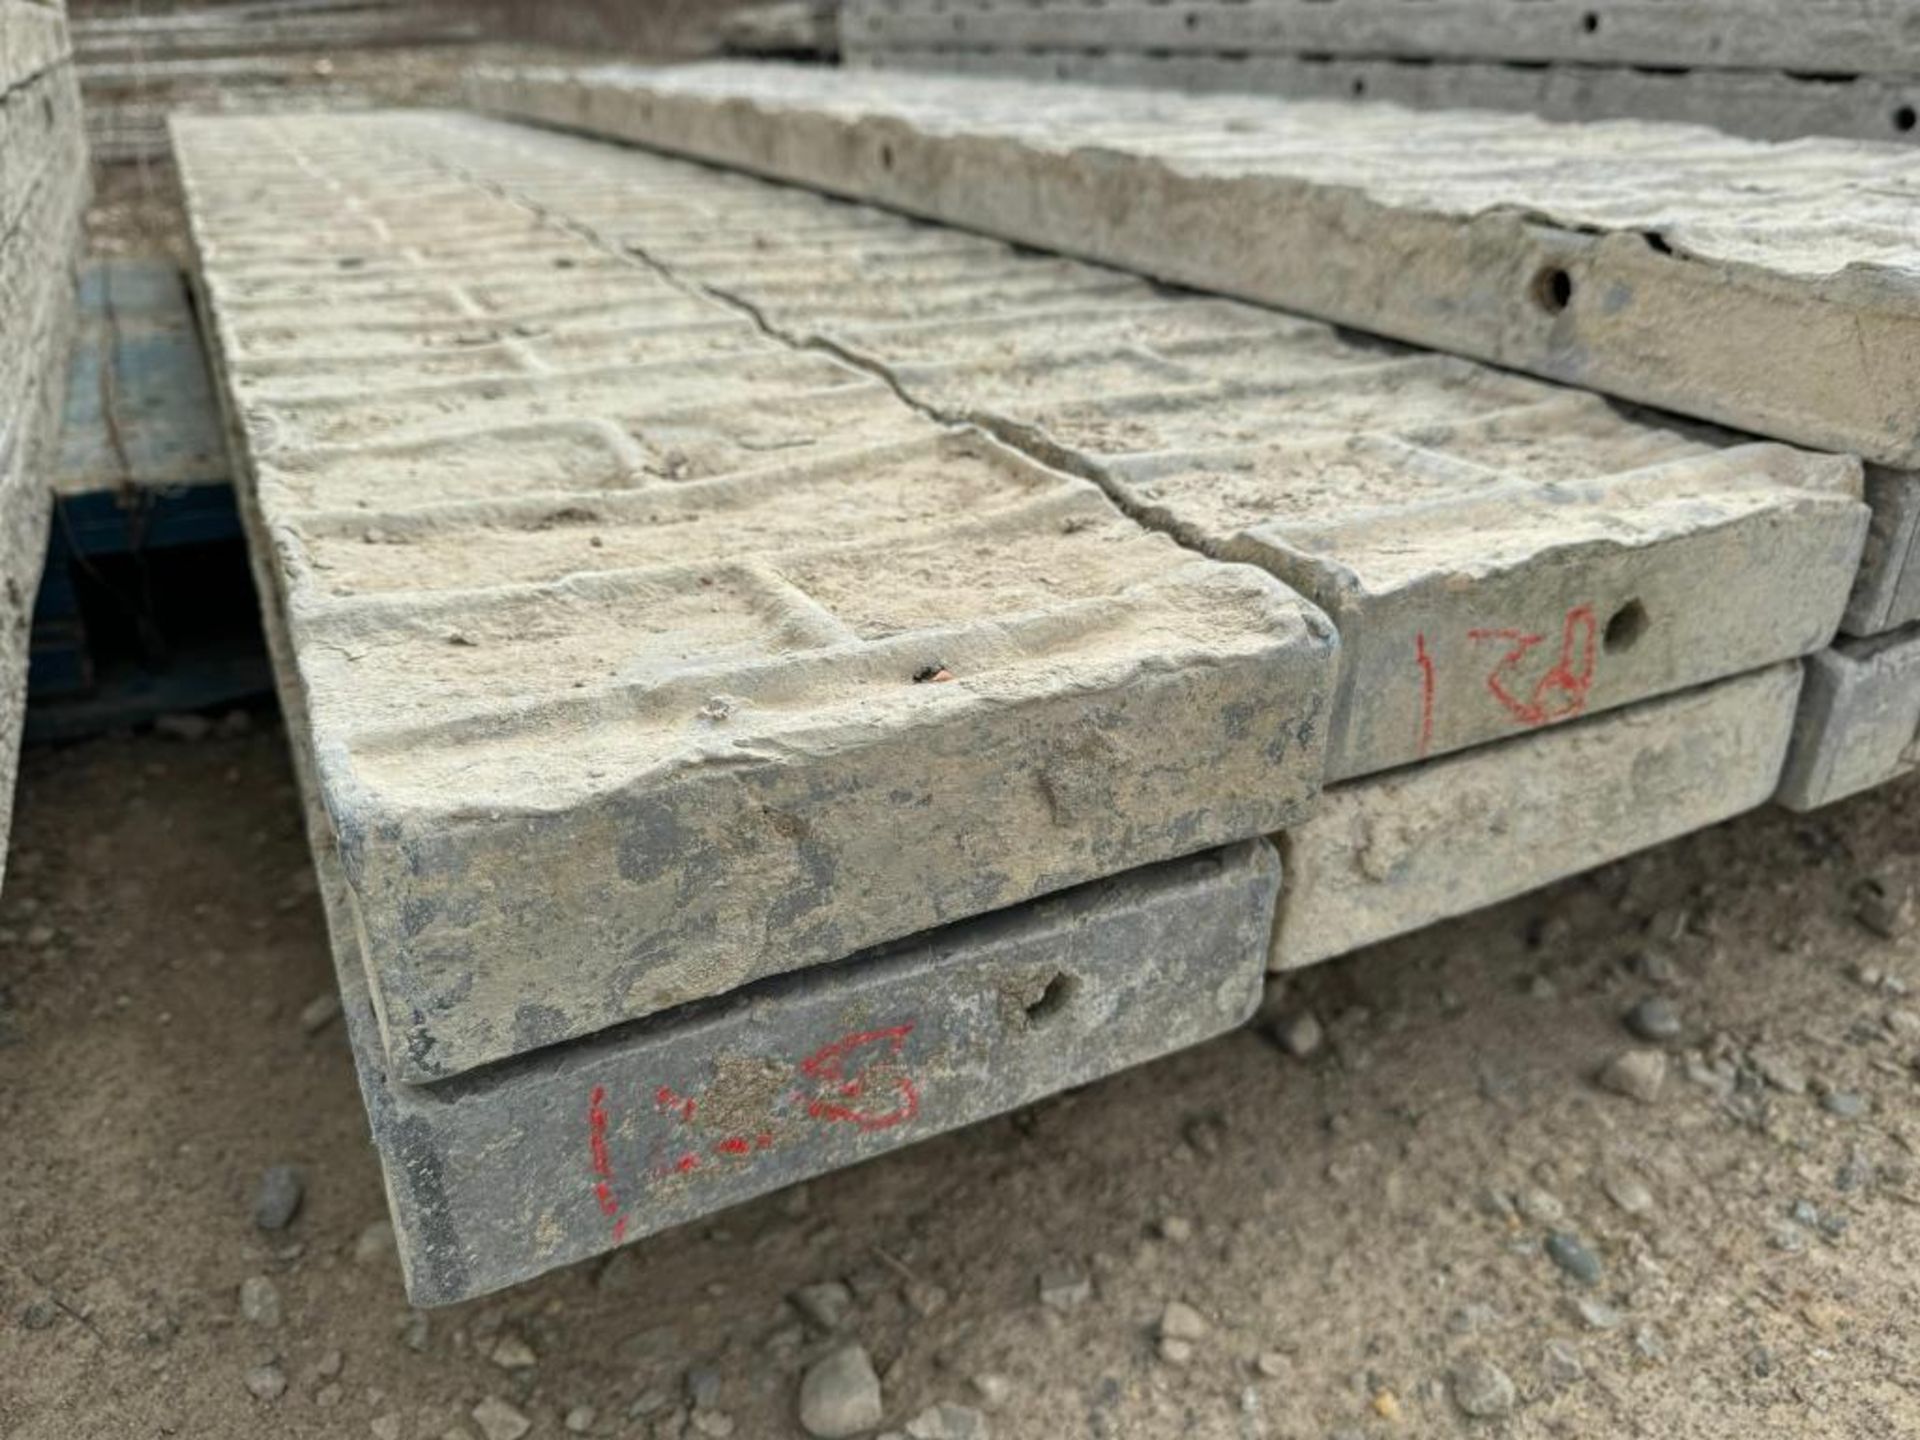 (4) 9" x 8' Textured Brick Aluminum Concrete Forms